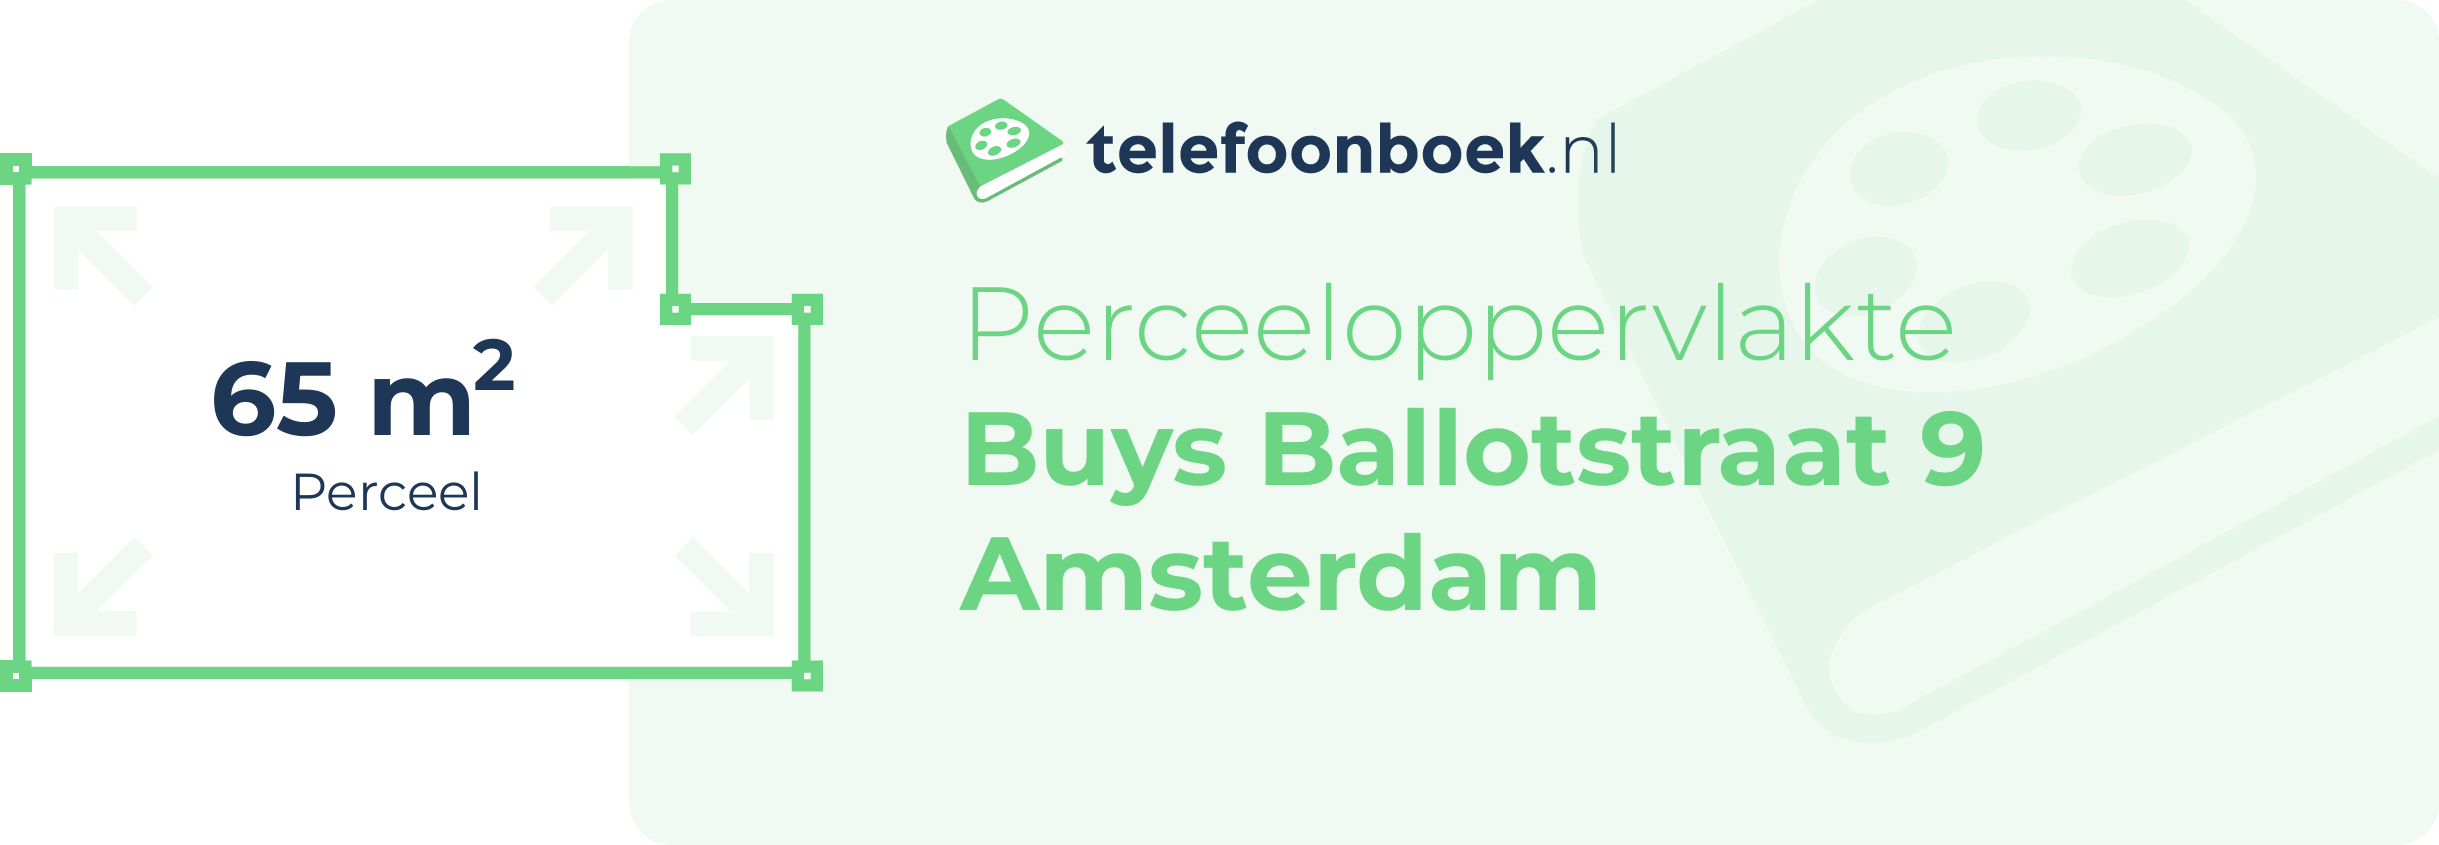 Perceeloppervlakte Buys Ballotstraat 9 Amsterdam